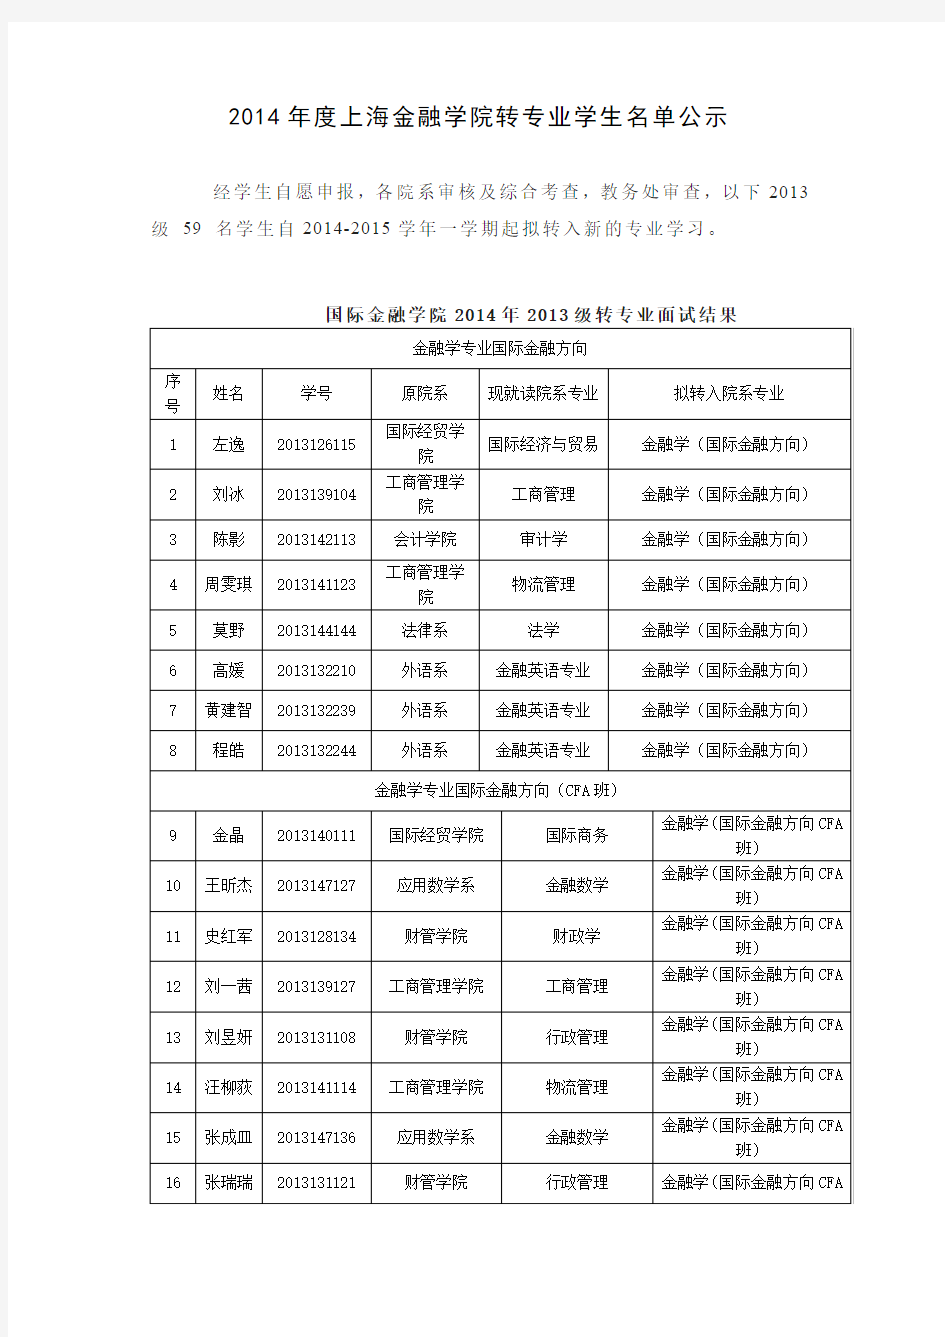 2014年度上海金融学院转专业学生名单公示